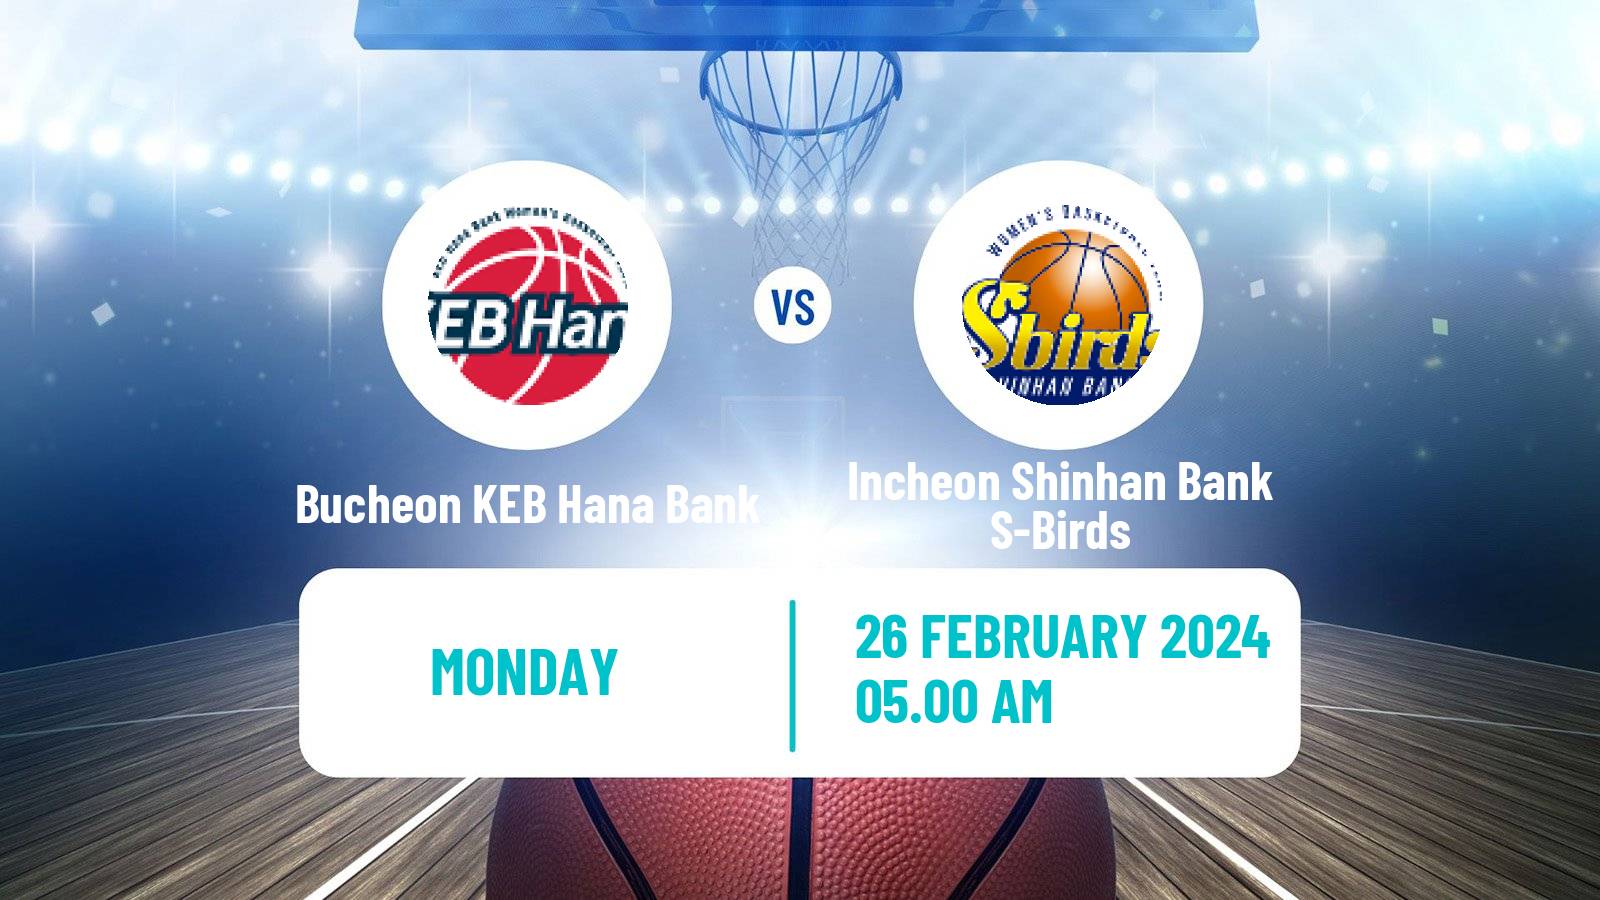 Basketball WKBL Bucheon KEB Hana Bank - Incheon Shinhan Bank S-Birds